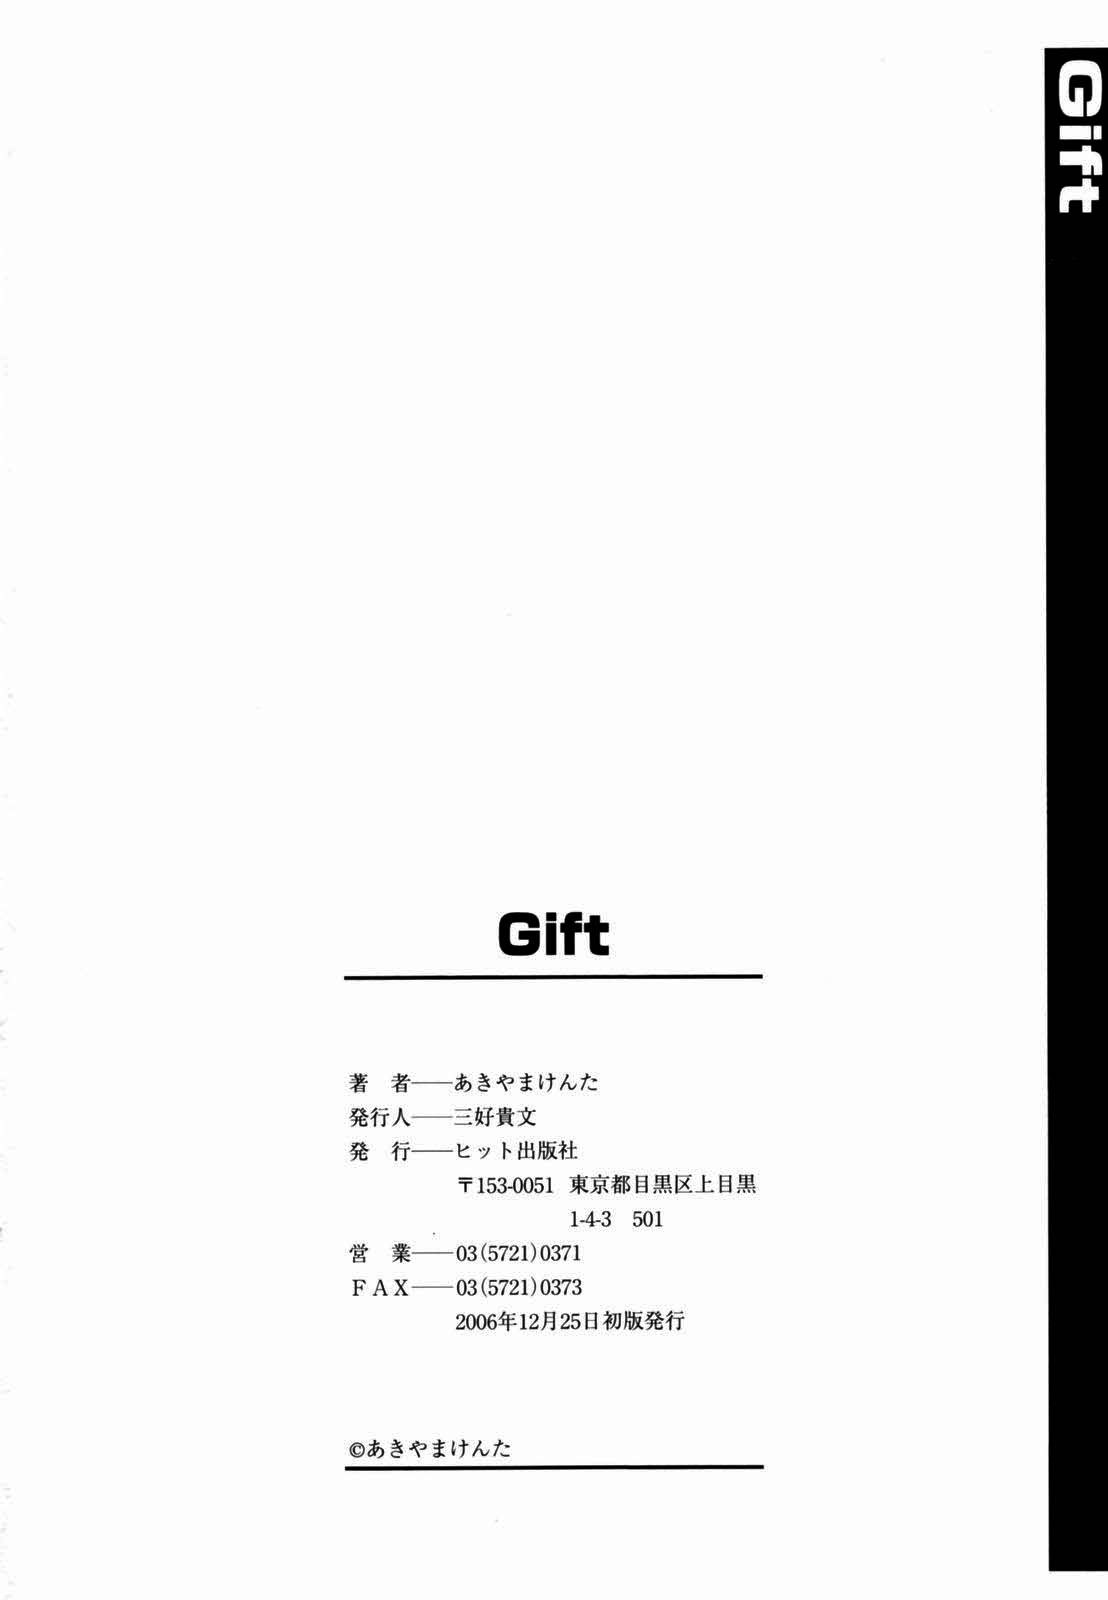 [Kenta Akiyama] Gift [あきやまけんた] Gift